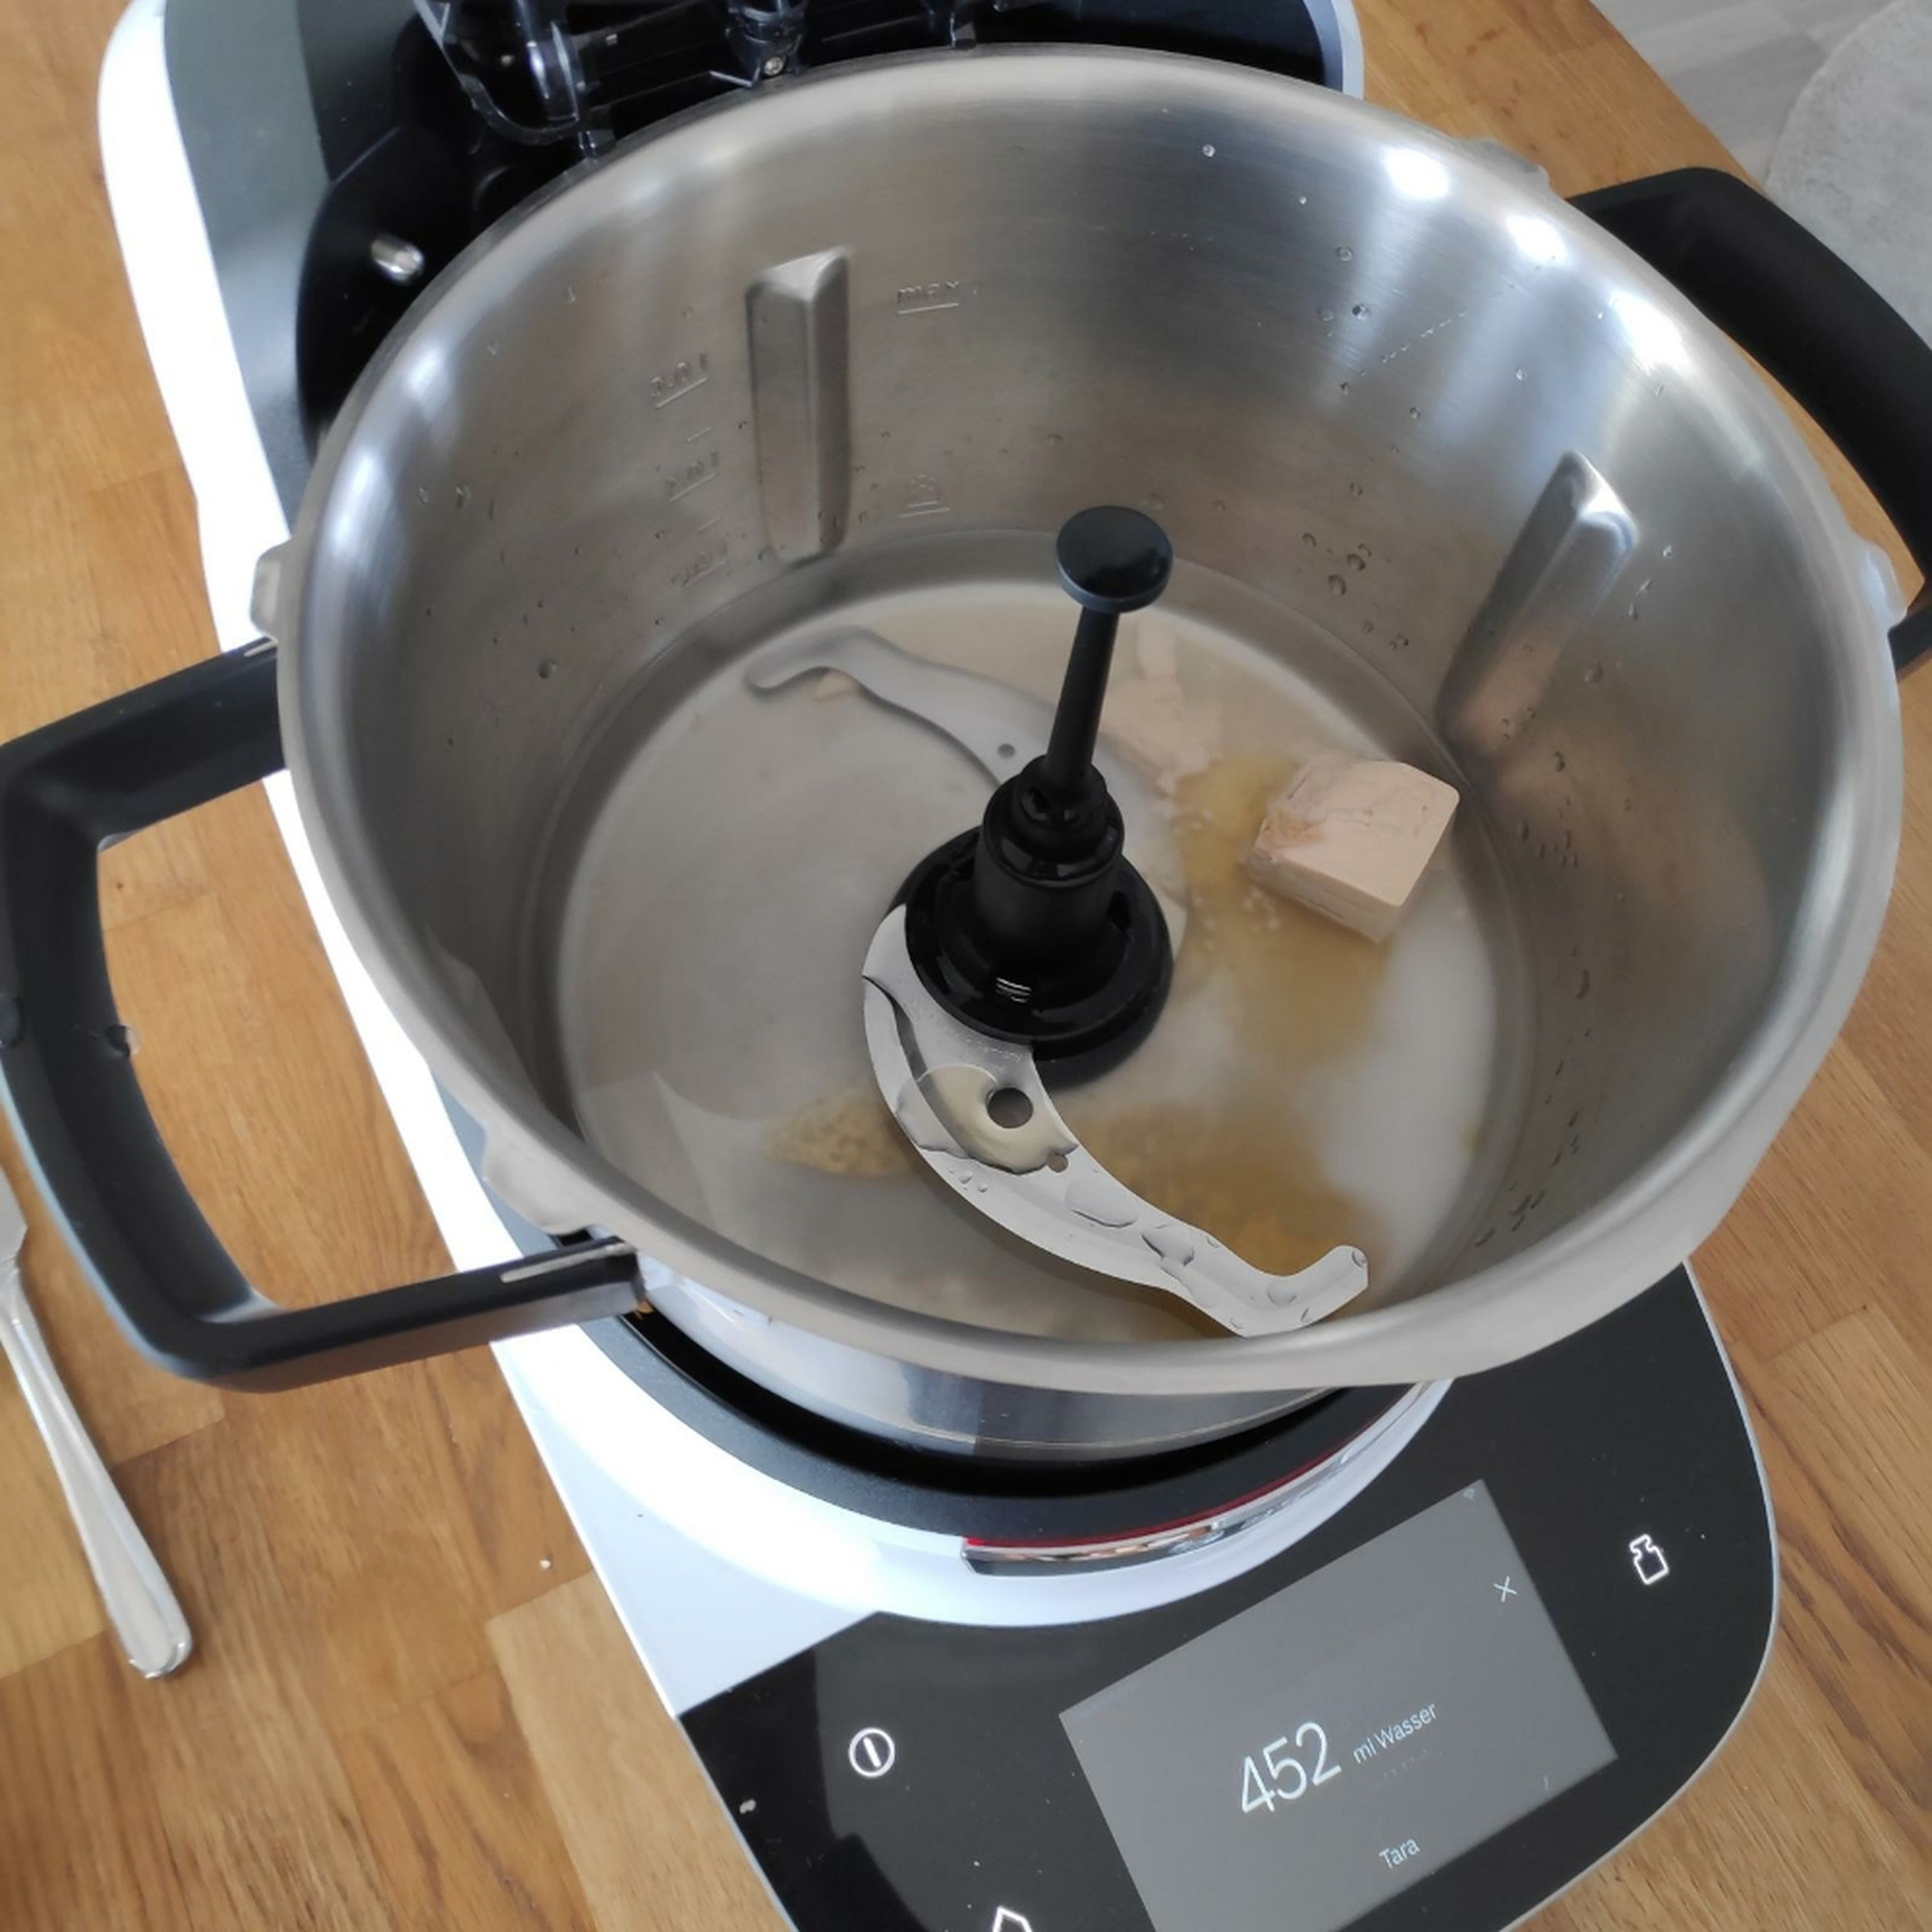 Universalmesser einsetzen. ½ Würfel Hefe, Honig, Salz und Wasser in den Cookit geben und bei geschlossenem Deckel und eingesetztem Messbecher auf Stufe 6 und 37°C für 2 Minuten verrühren (Universalmesser | Stufe 6 | 37°C | 2 Min.).